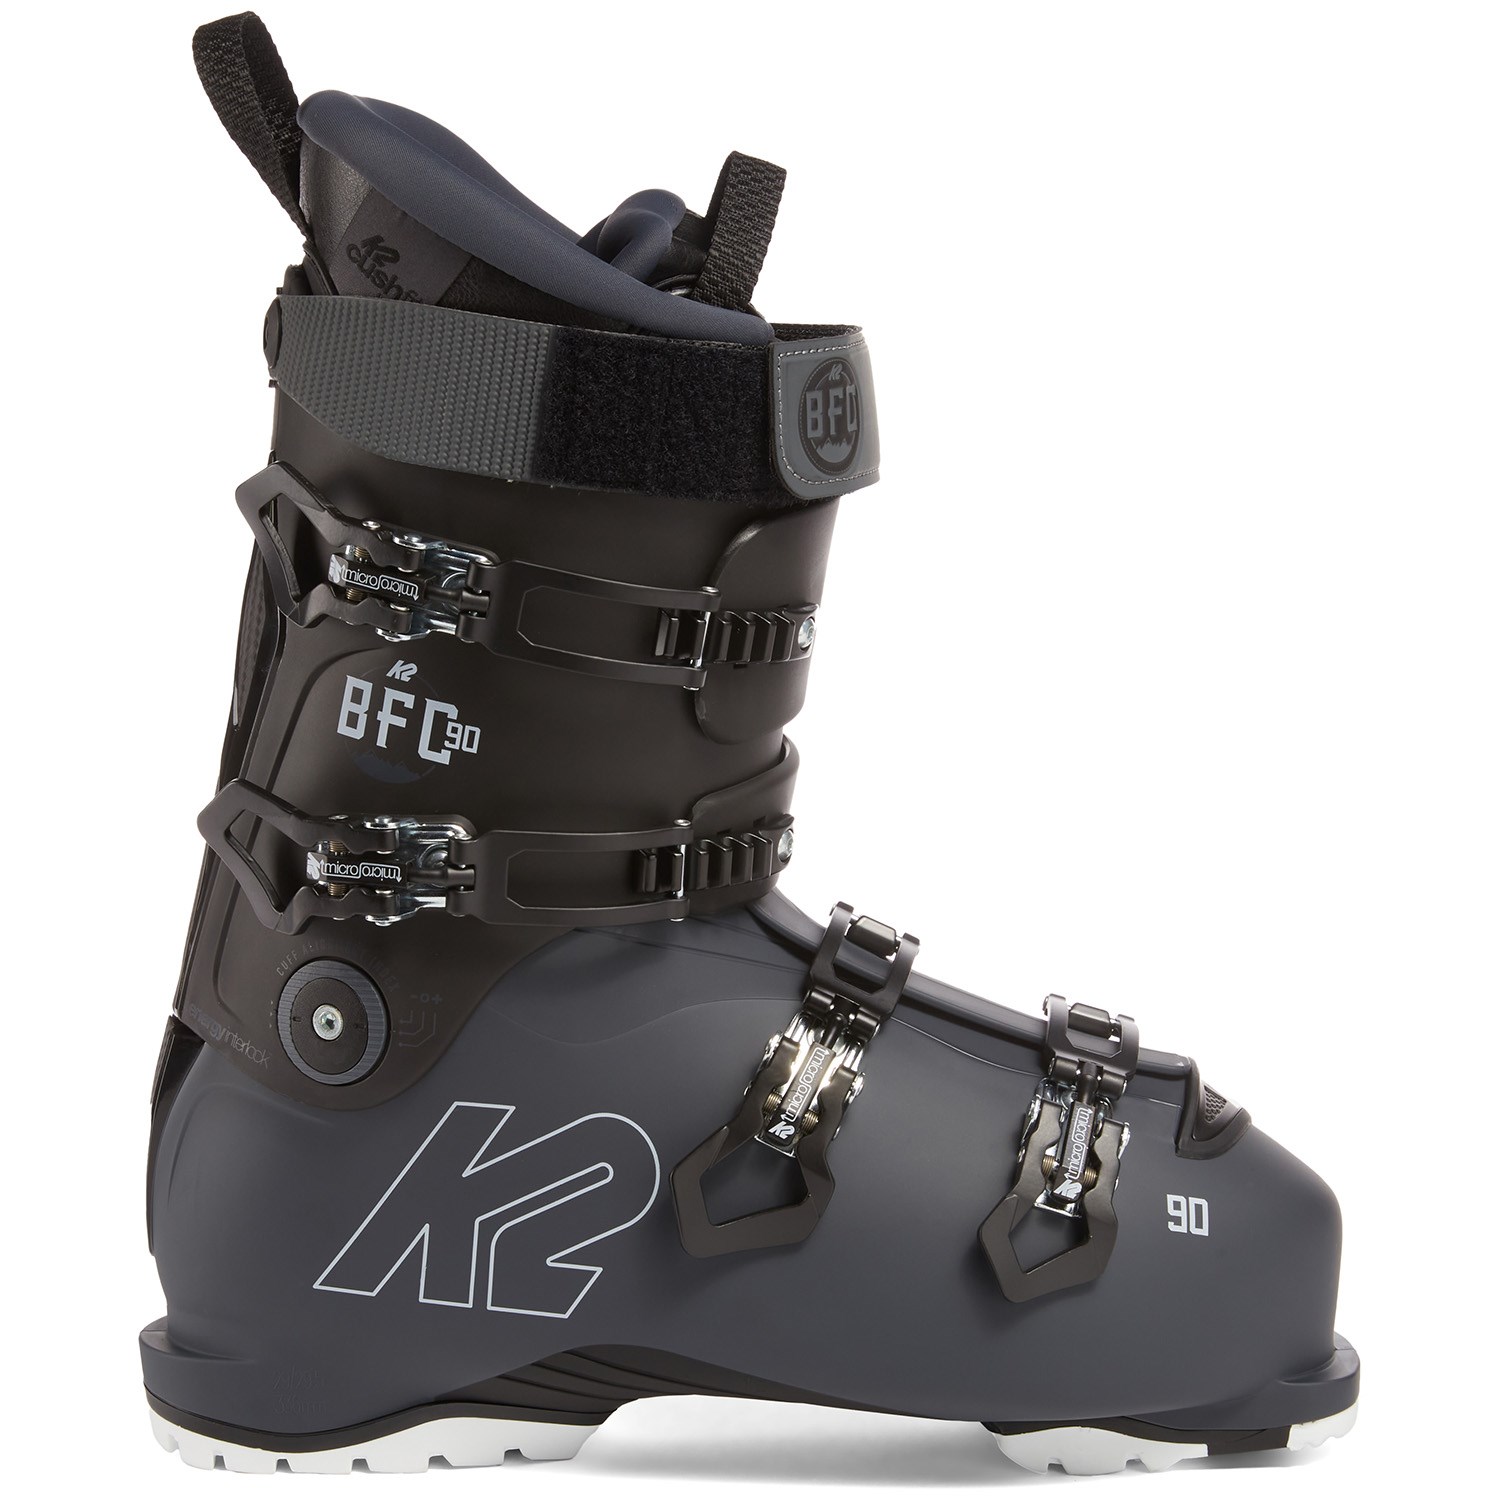 K2 Bfc 90 Hv 103 mm Men's Ski Boots Ski Boots Ski Boots All-Mountain New Top 